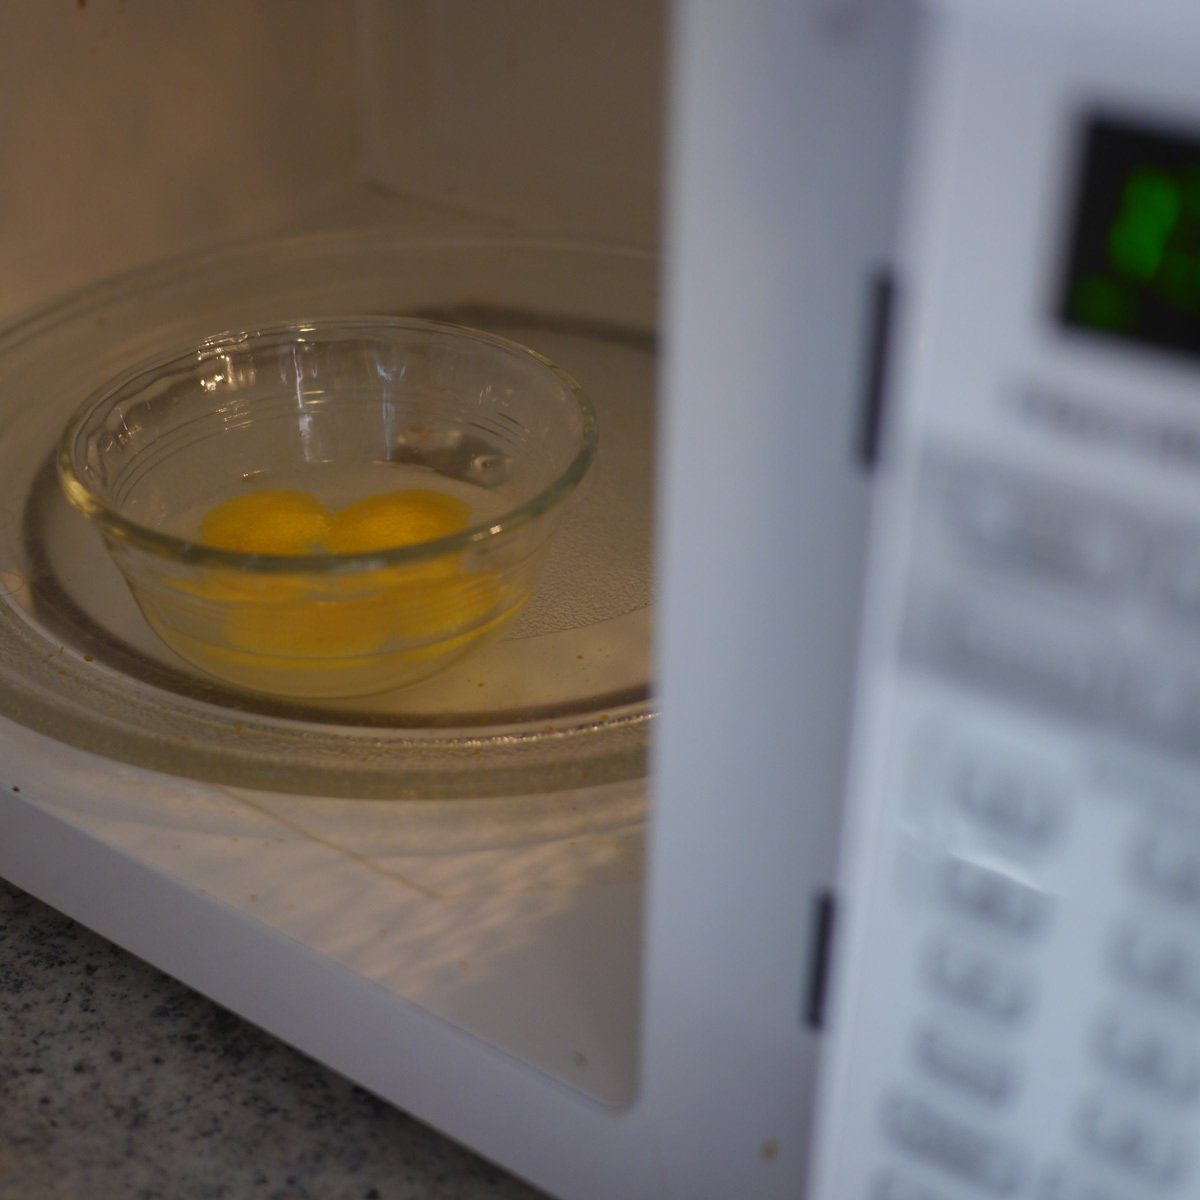 Egg yolks in microwave